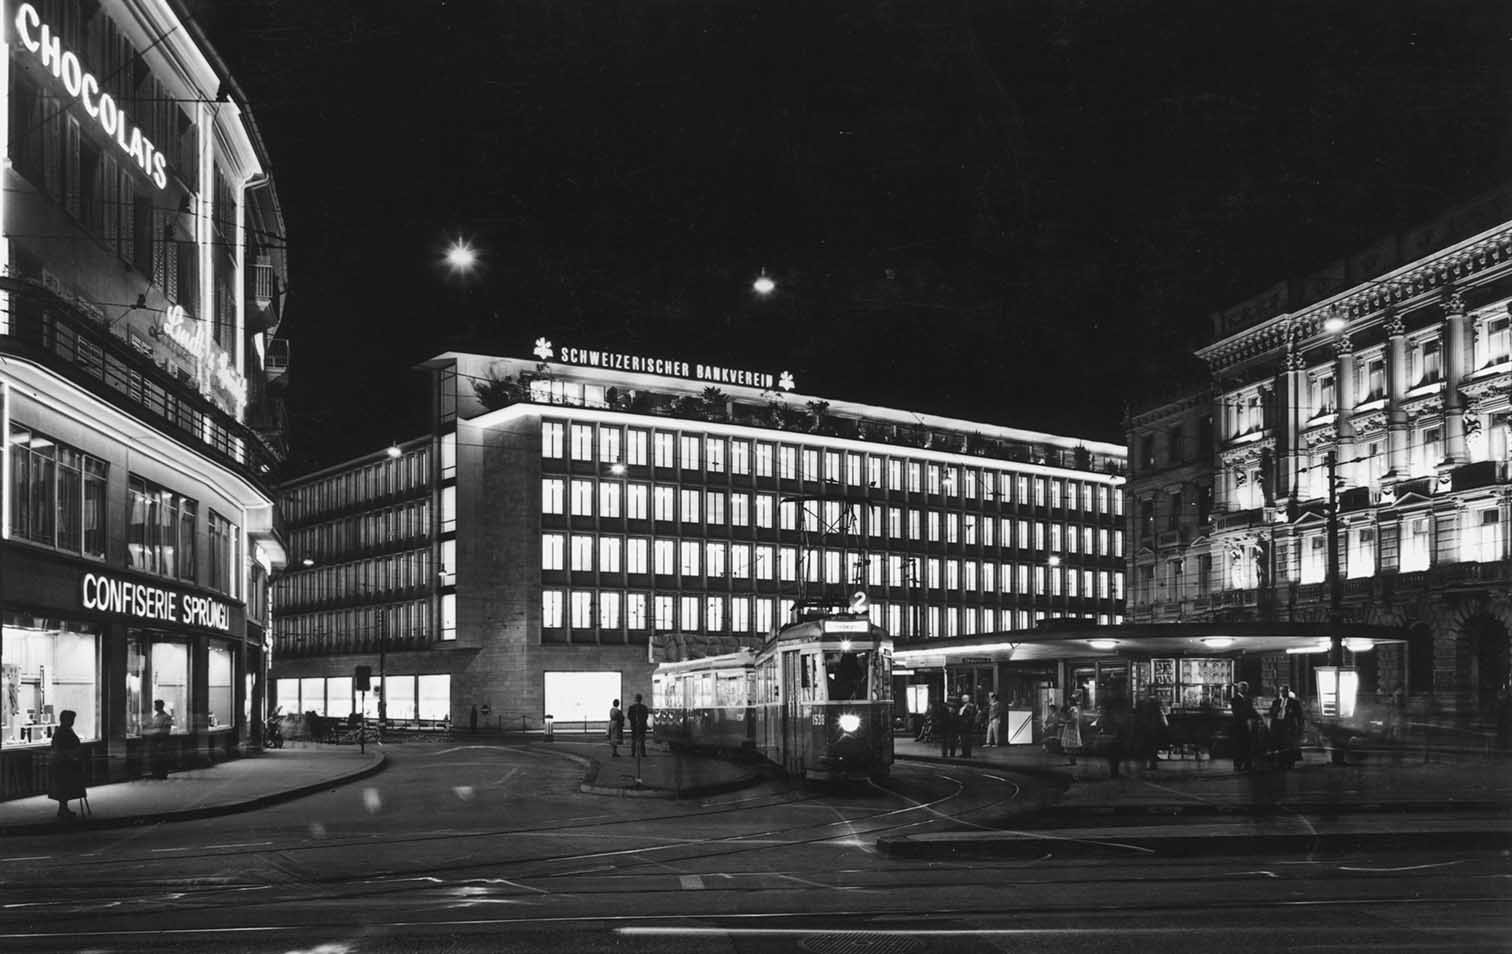 Gebäude des Schweizerischen Bankvereins in Zürich um 1960